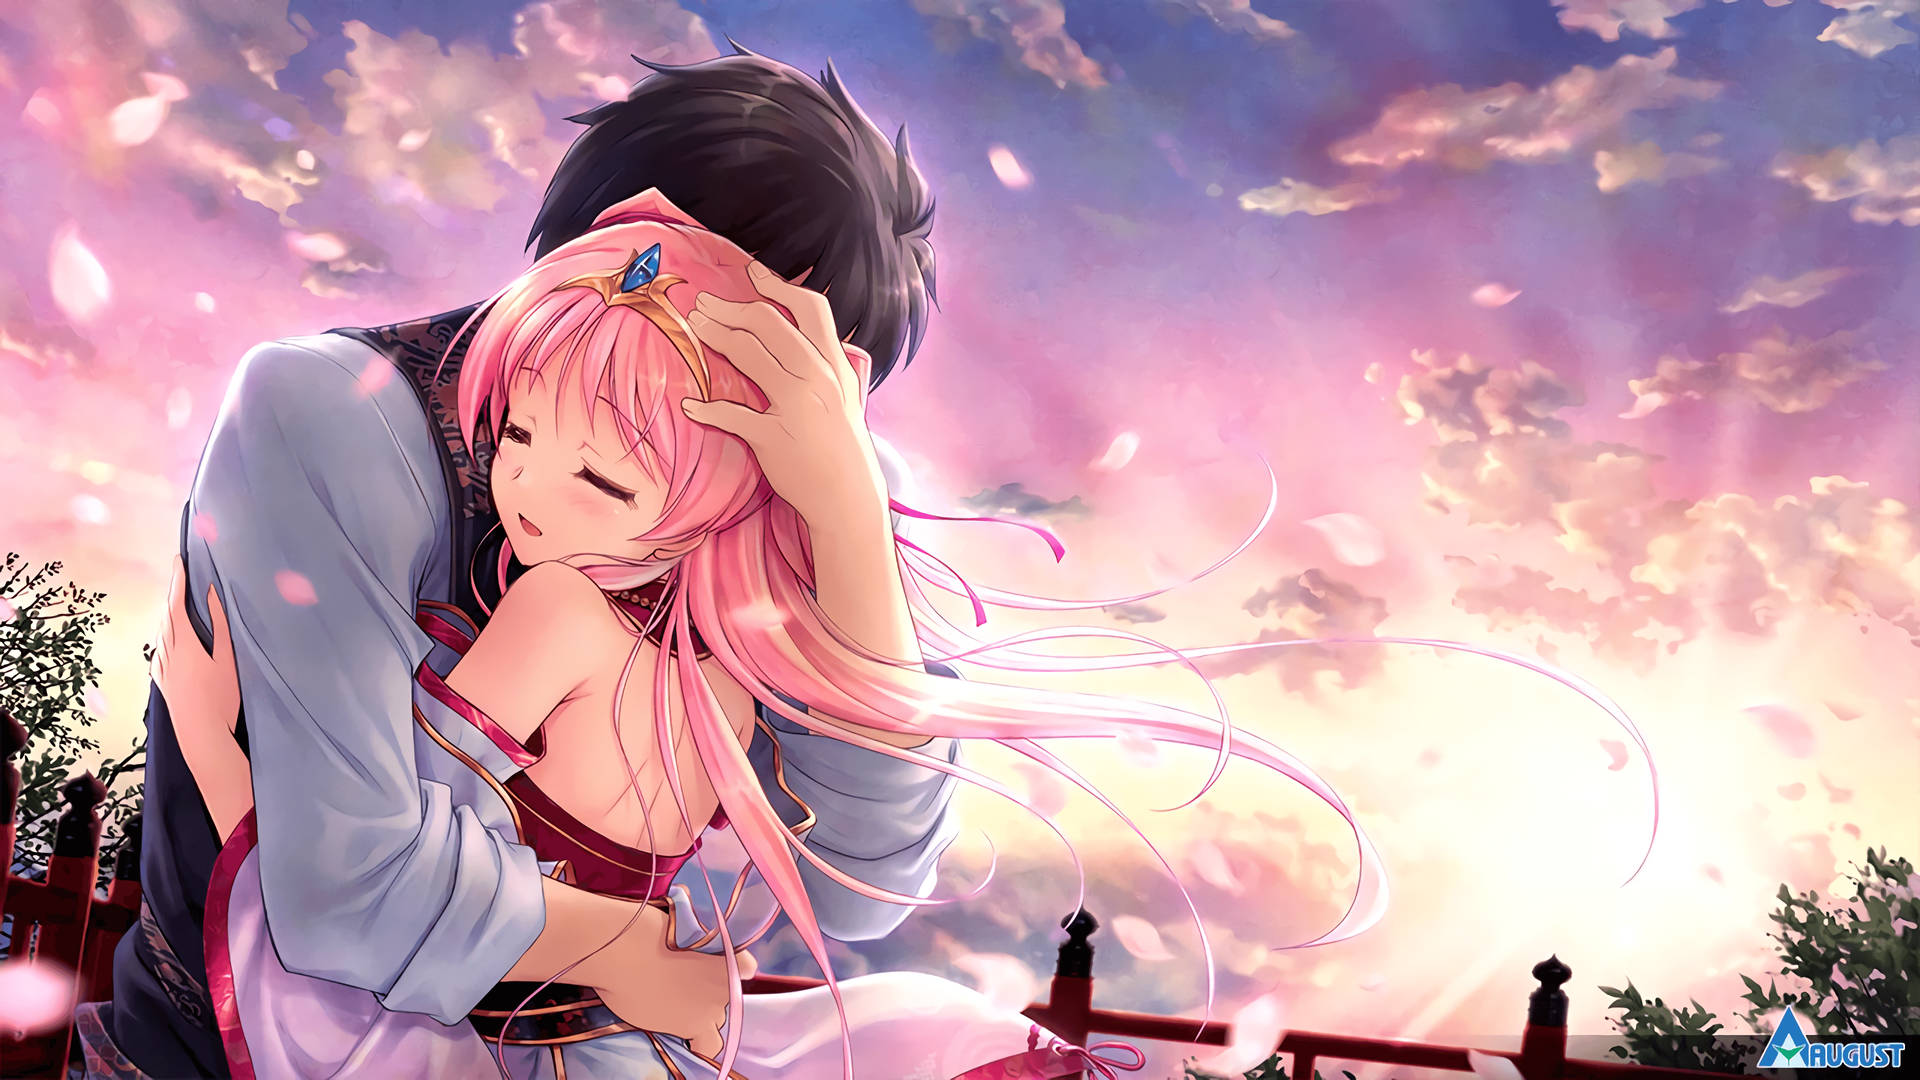 Download Anime Couple Hug Pink Sky Wallpaper 